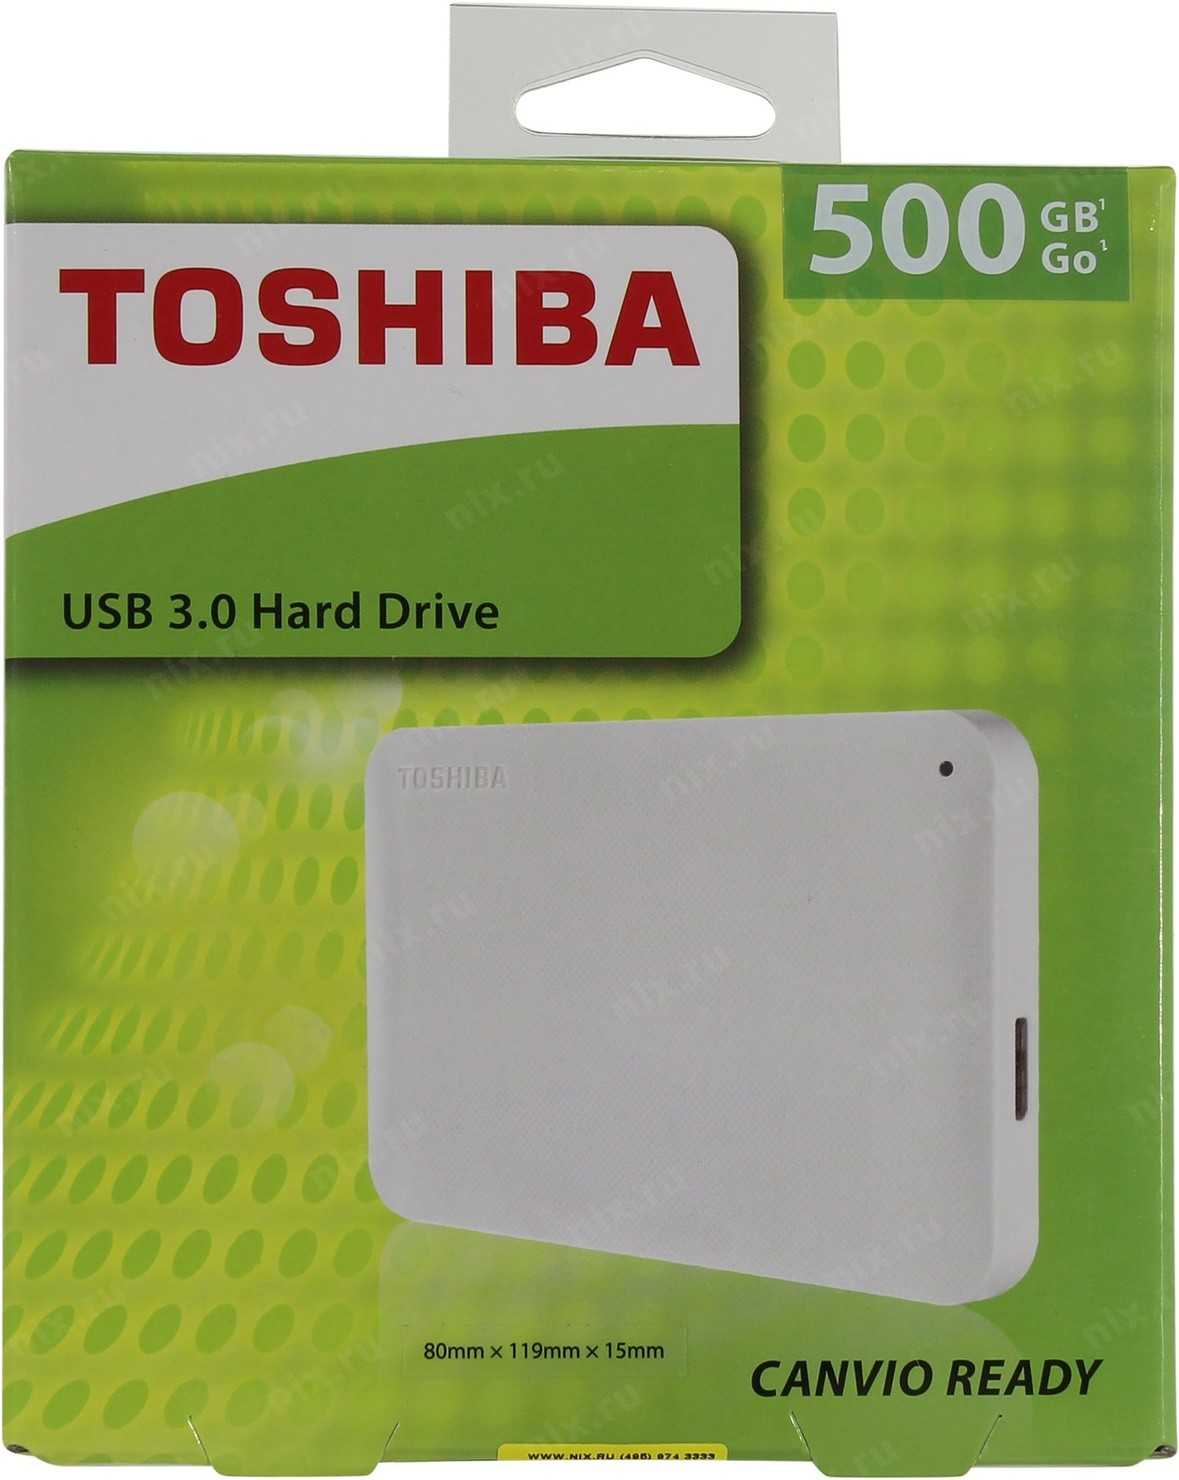 Toshiba Canvio Ready 500 ГБ - короткий но максимально информативный обзор Для большего удобства добавлены характеристики отзывы и видео